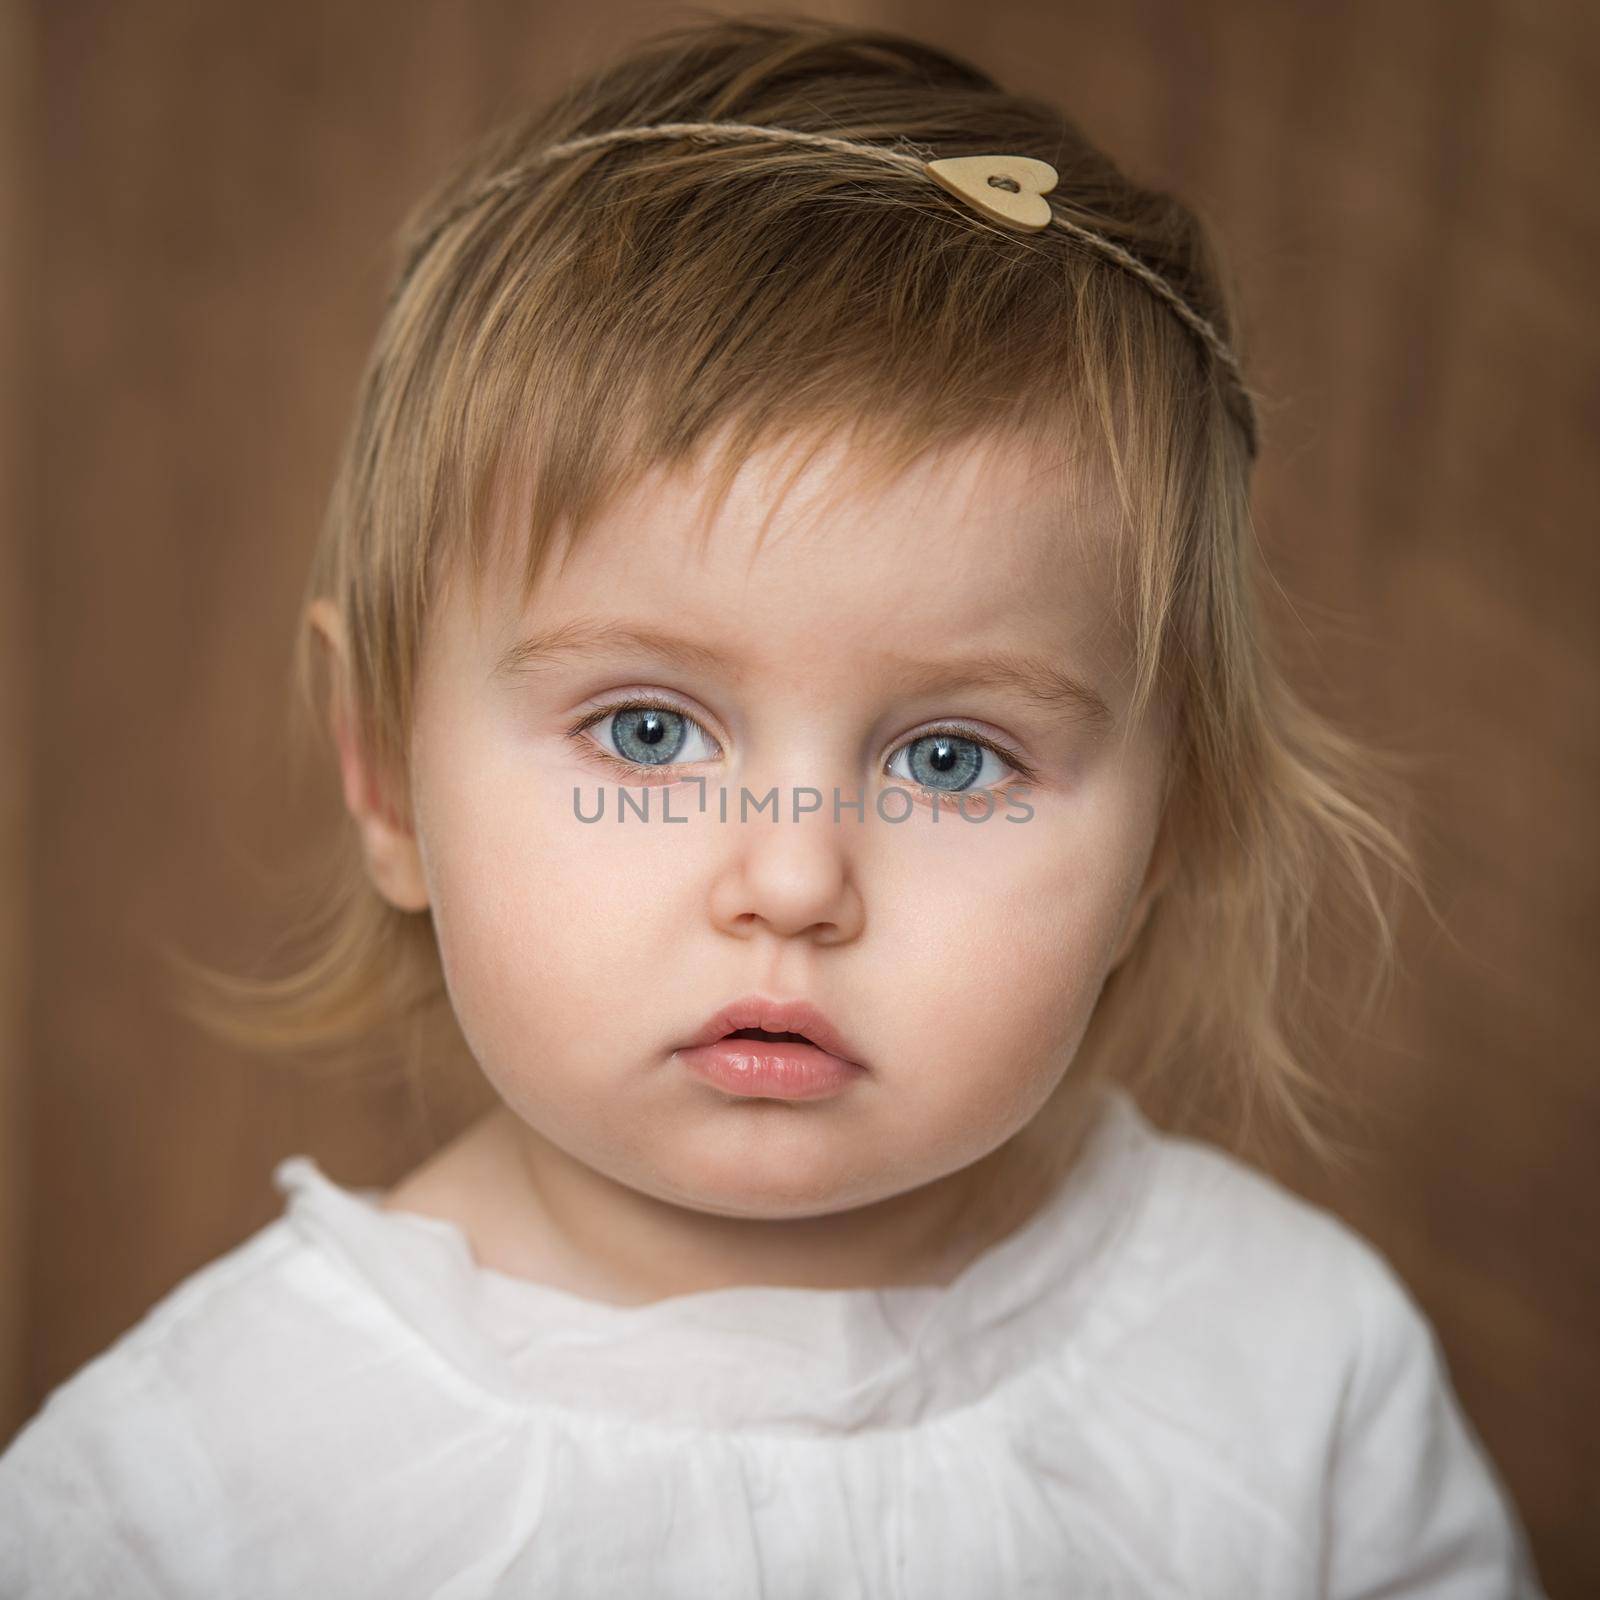 portrait of a little girl by tan4ikk1